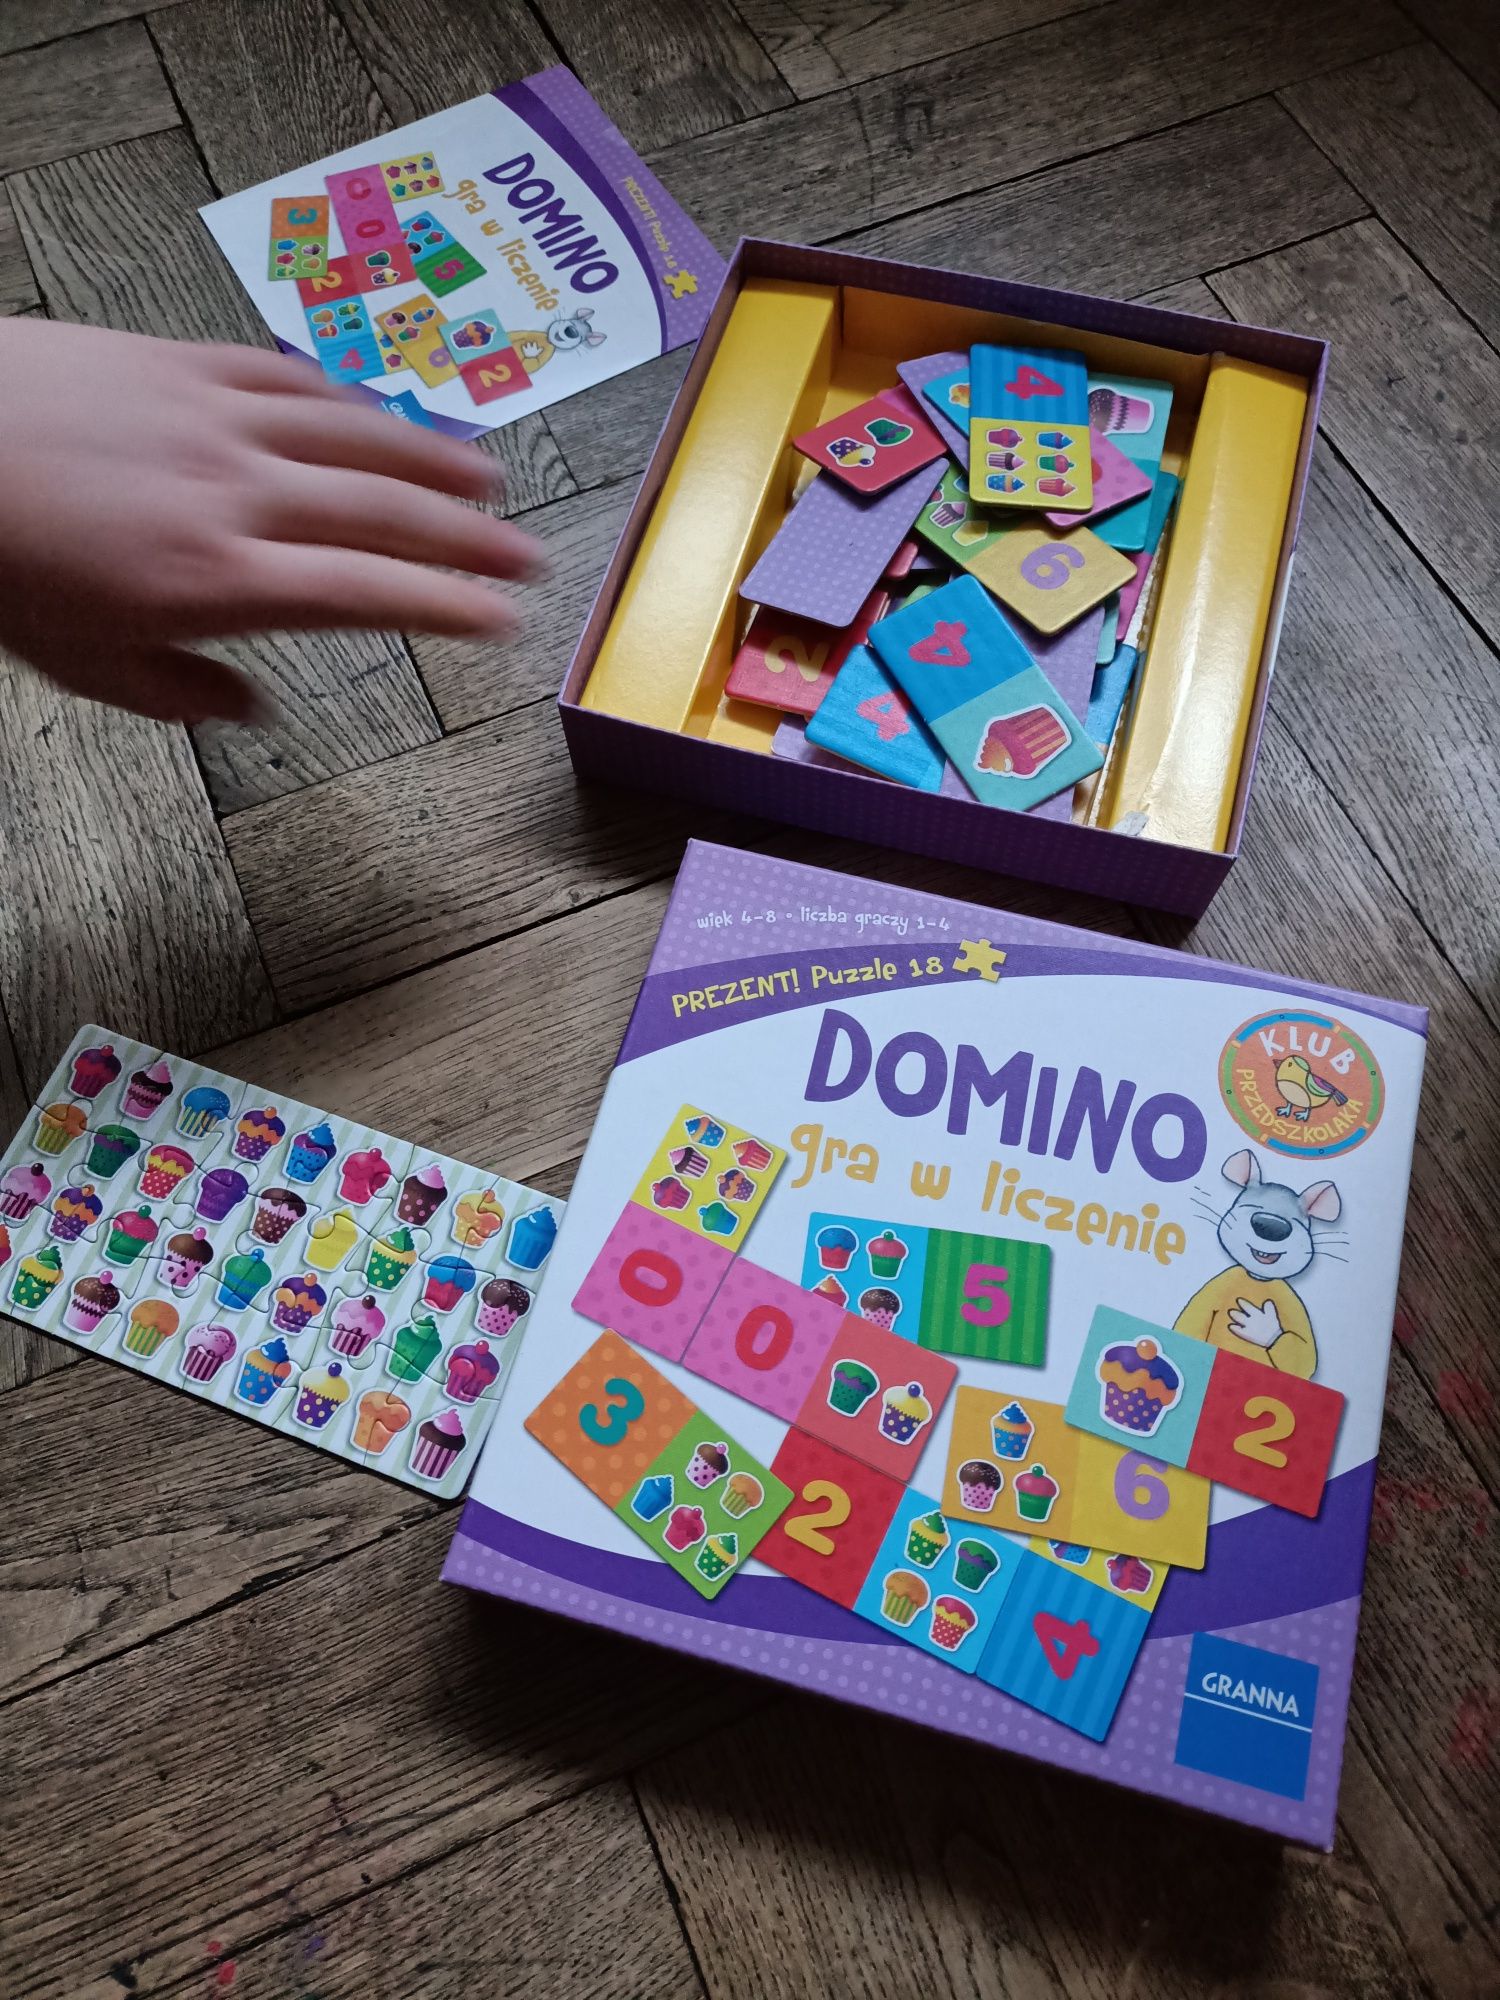 Zabawka edukacyjna Domino Gra w liczenie Granna 6+